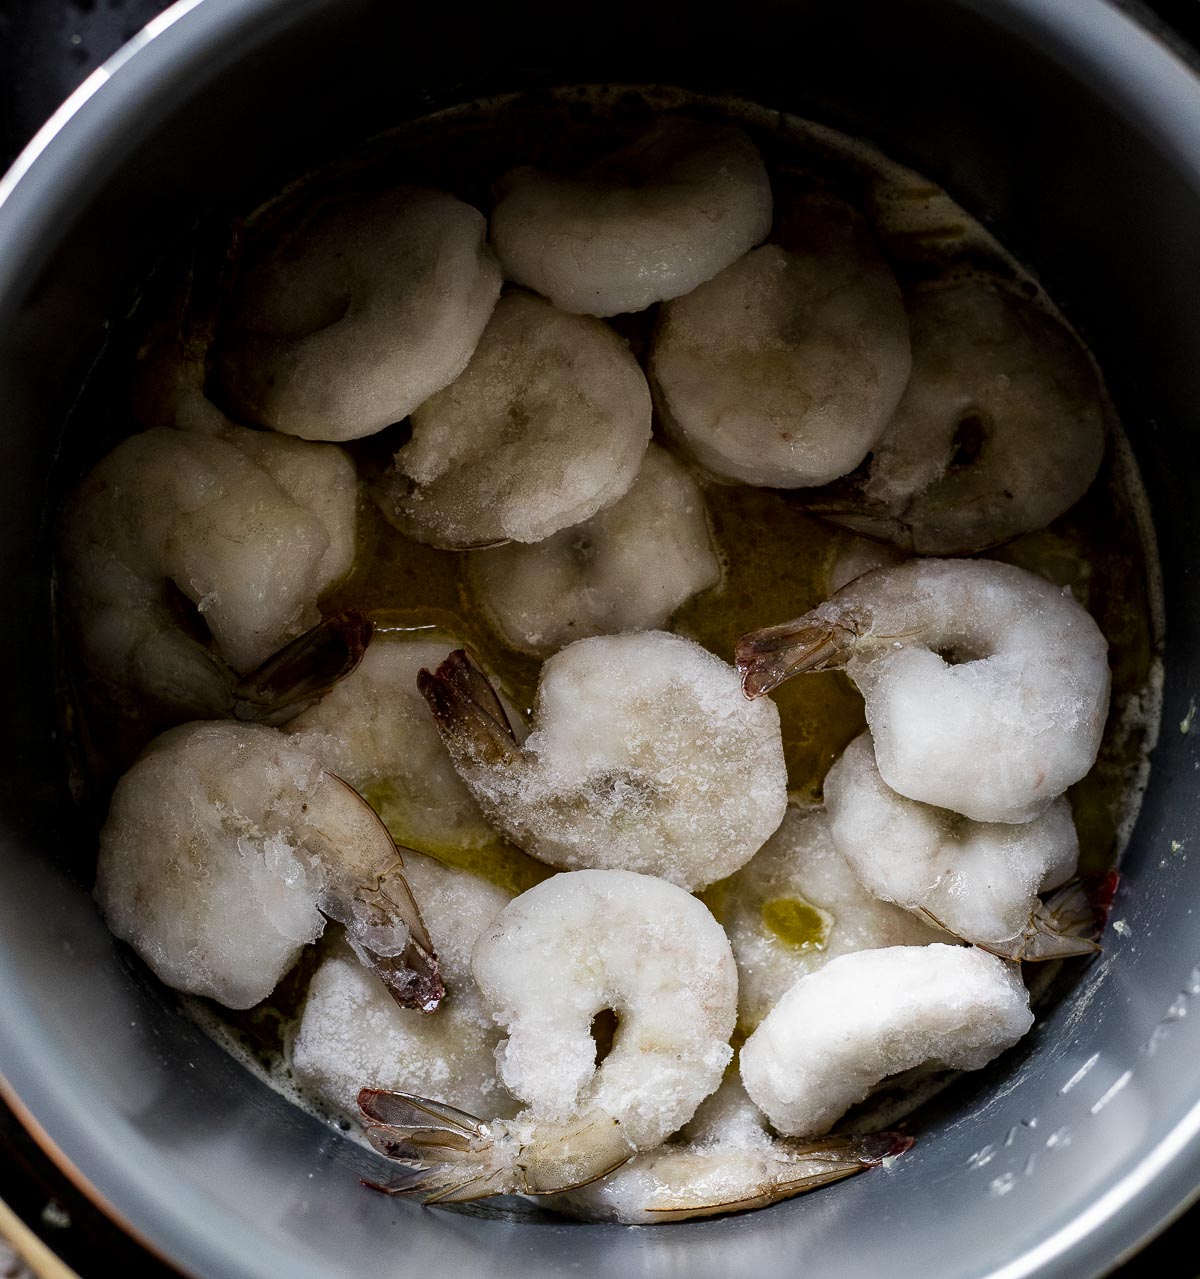 Frozen shrimp added to the Instant Pot insert.